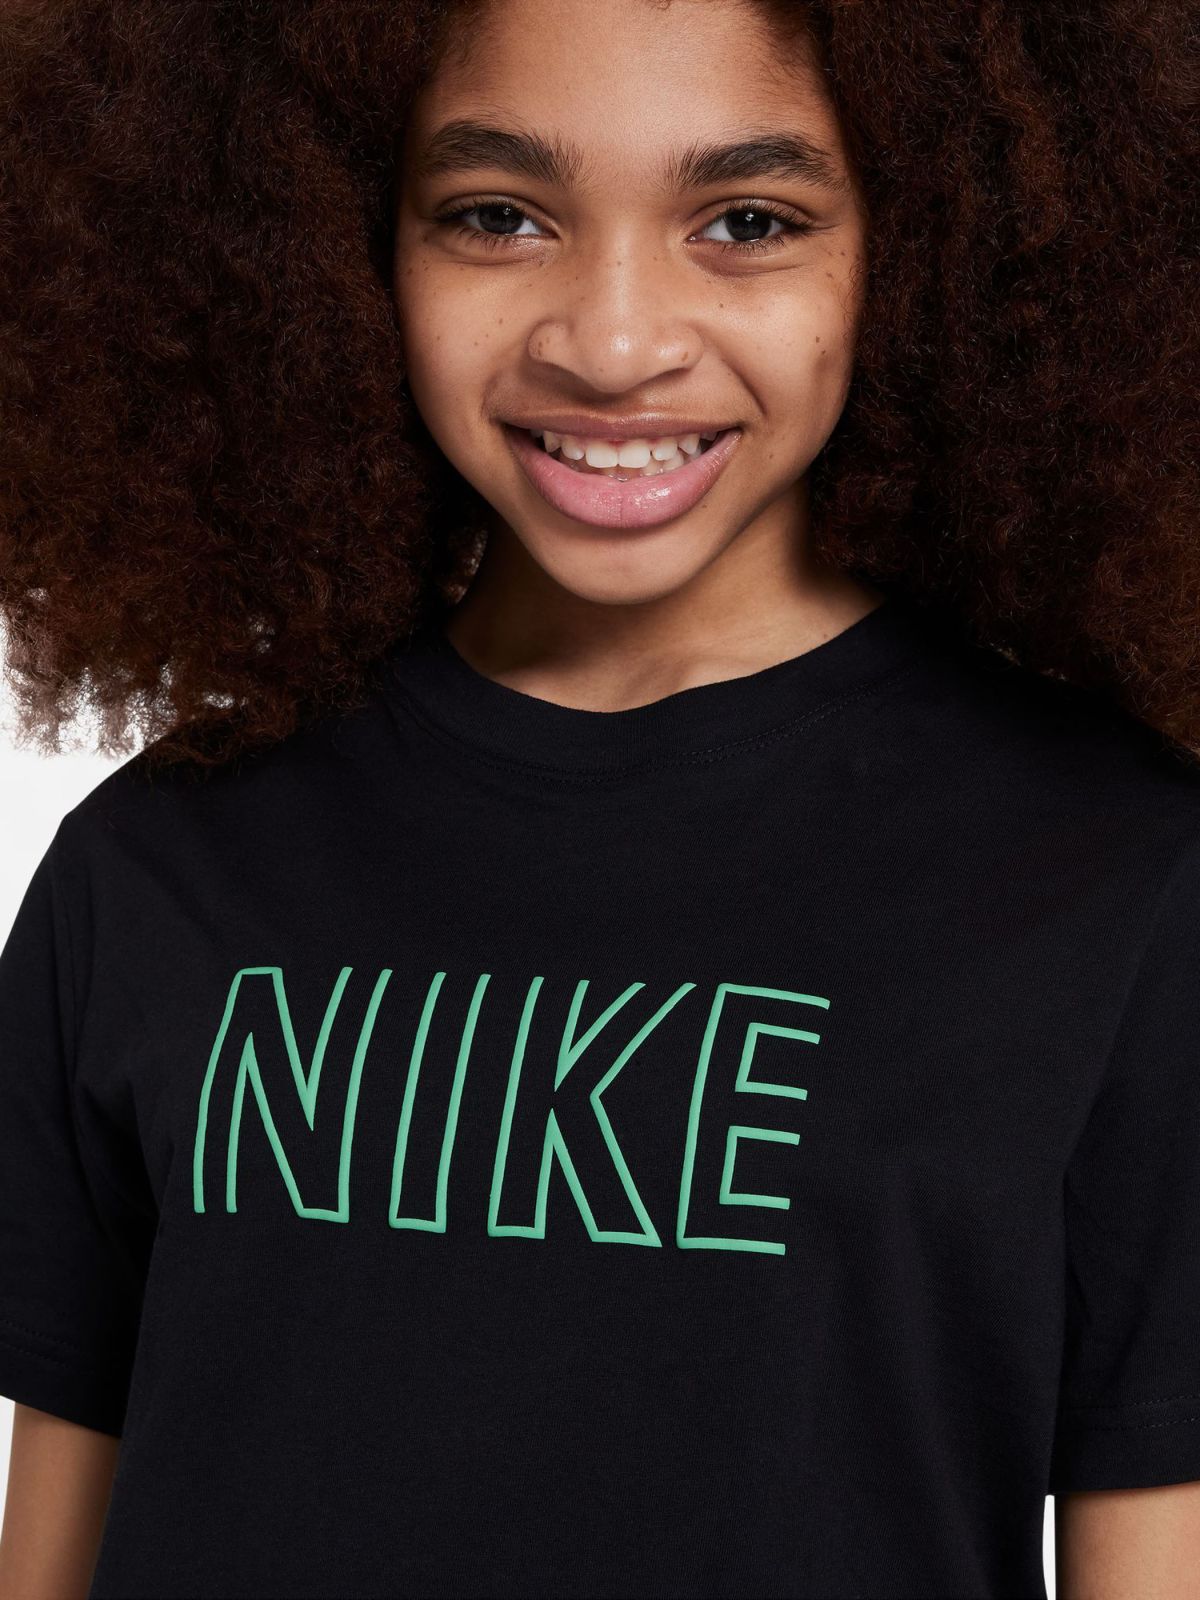  טי שירט עם לוגו Nike Sportswear של NIKE